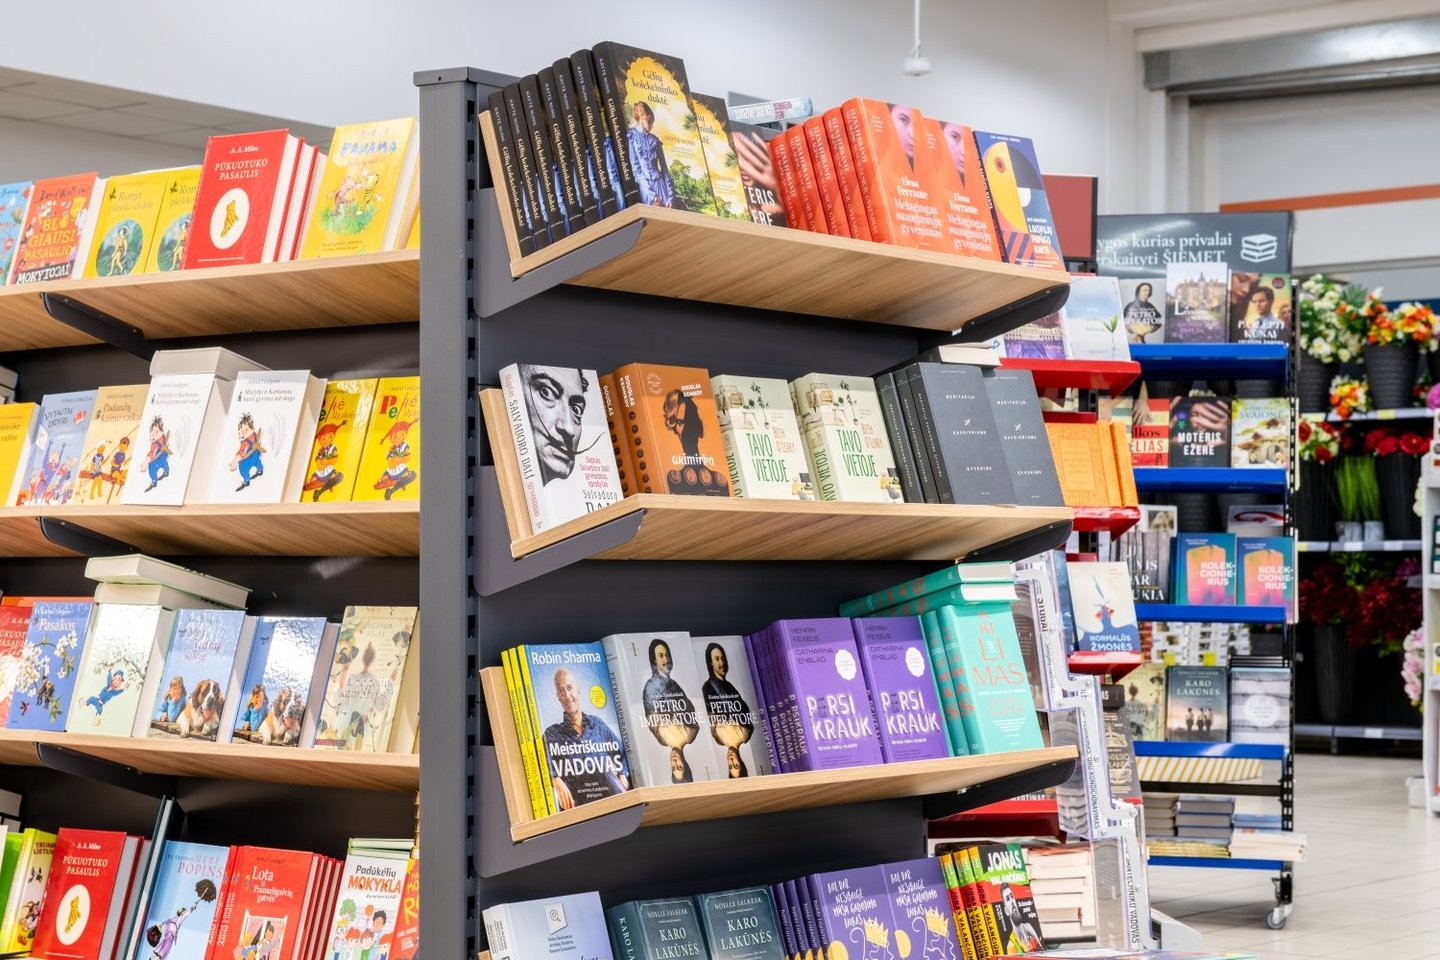 Prekybos tinklas „Senukai“, rugpjūčio mėnesį asortimentą papildęs knygomis, skaičiuoja kas mėnesį augančius jų pardavimus.